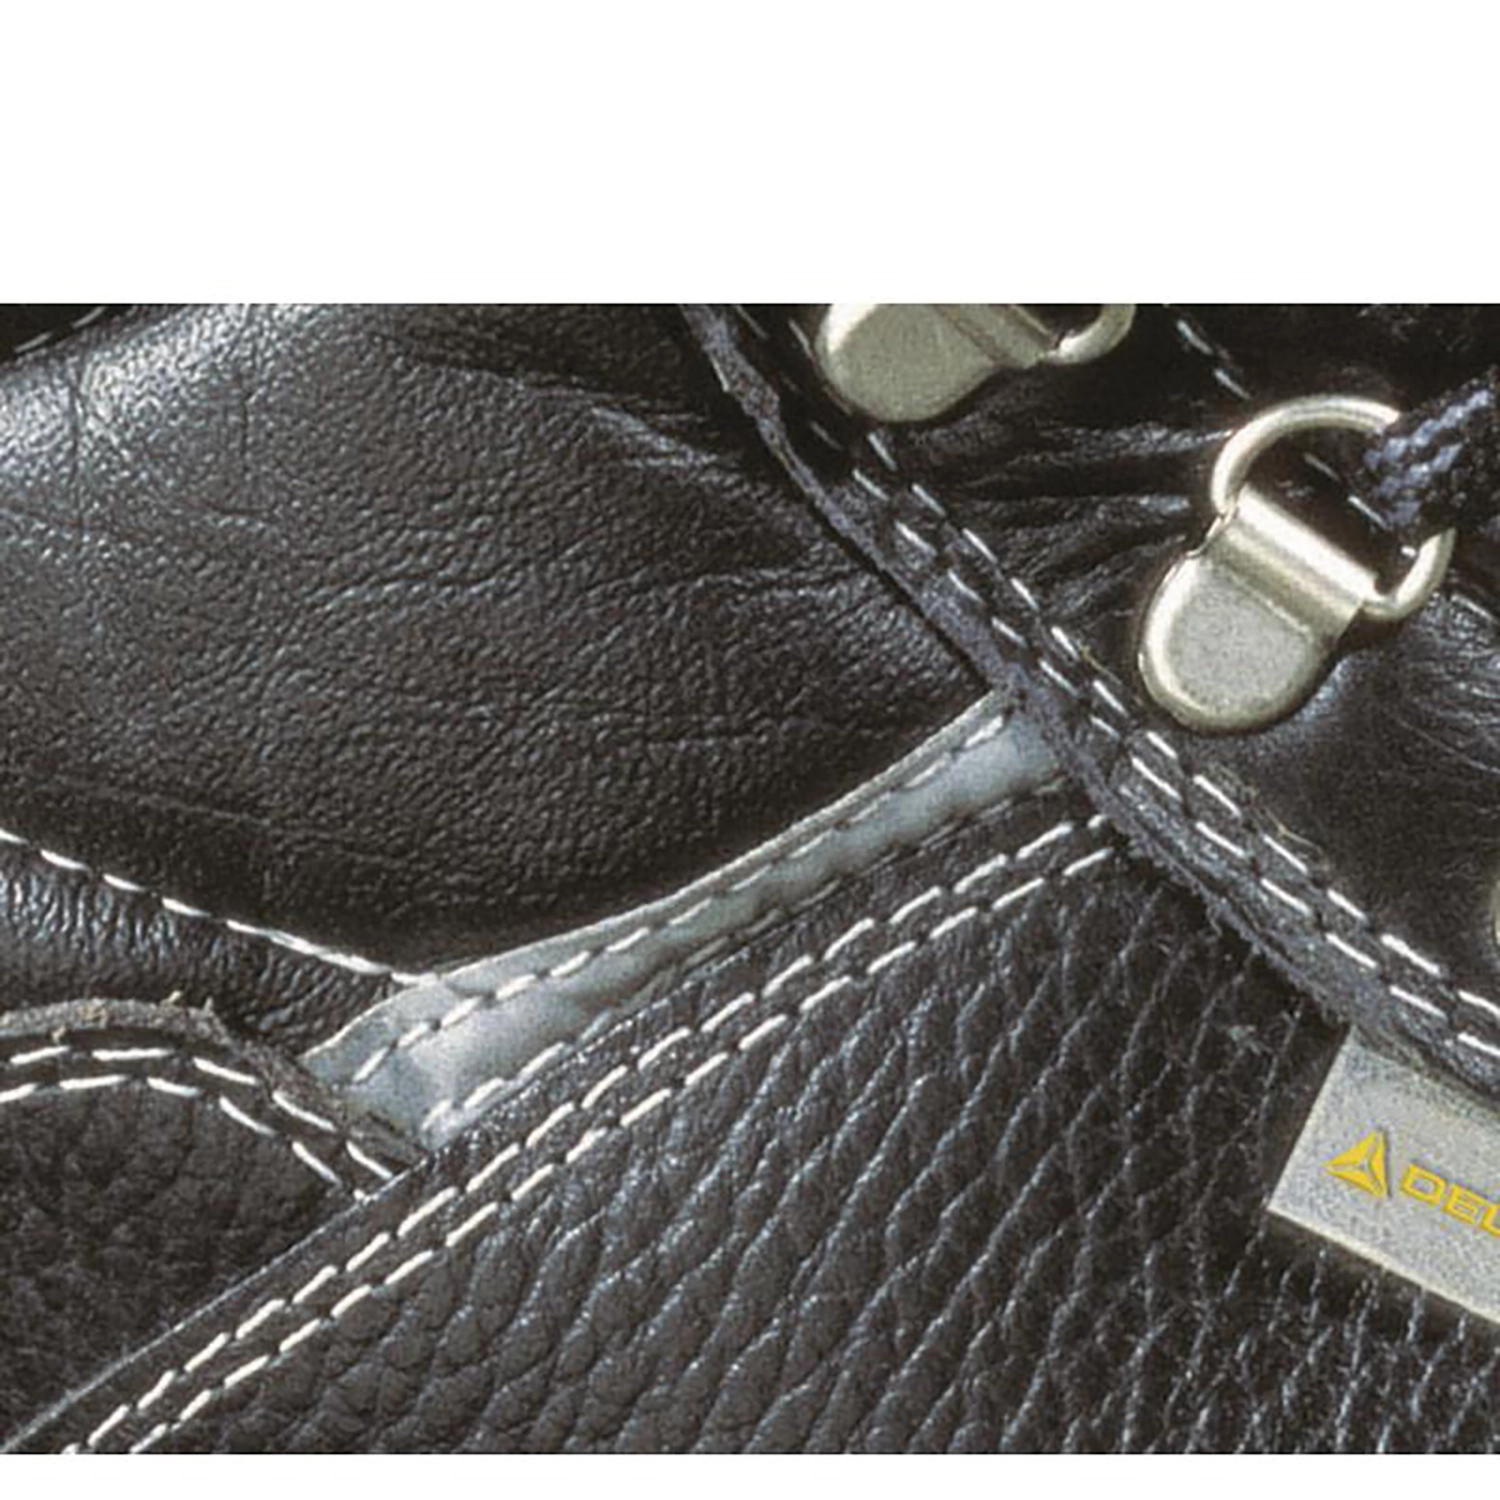 Hoog model schoenen - X-Large  - Sault S3 - zwart - maat 49